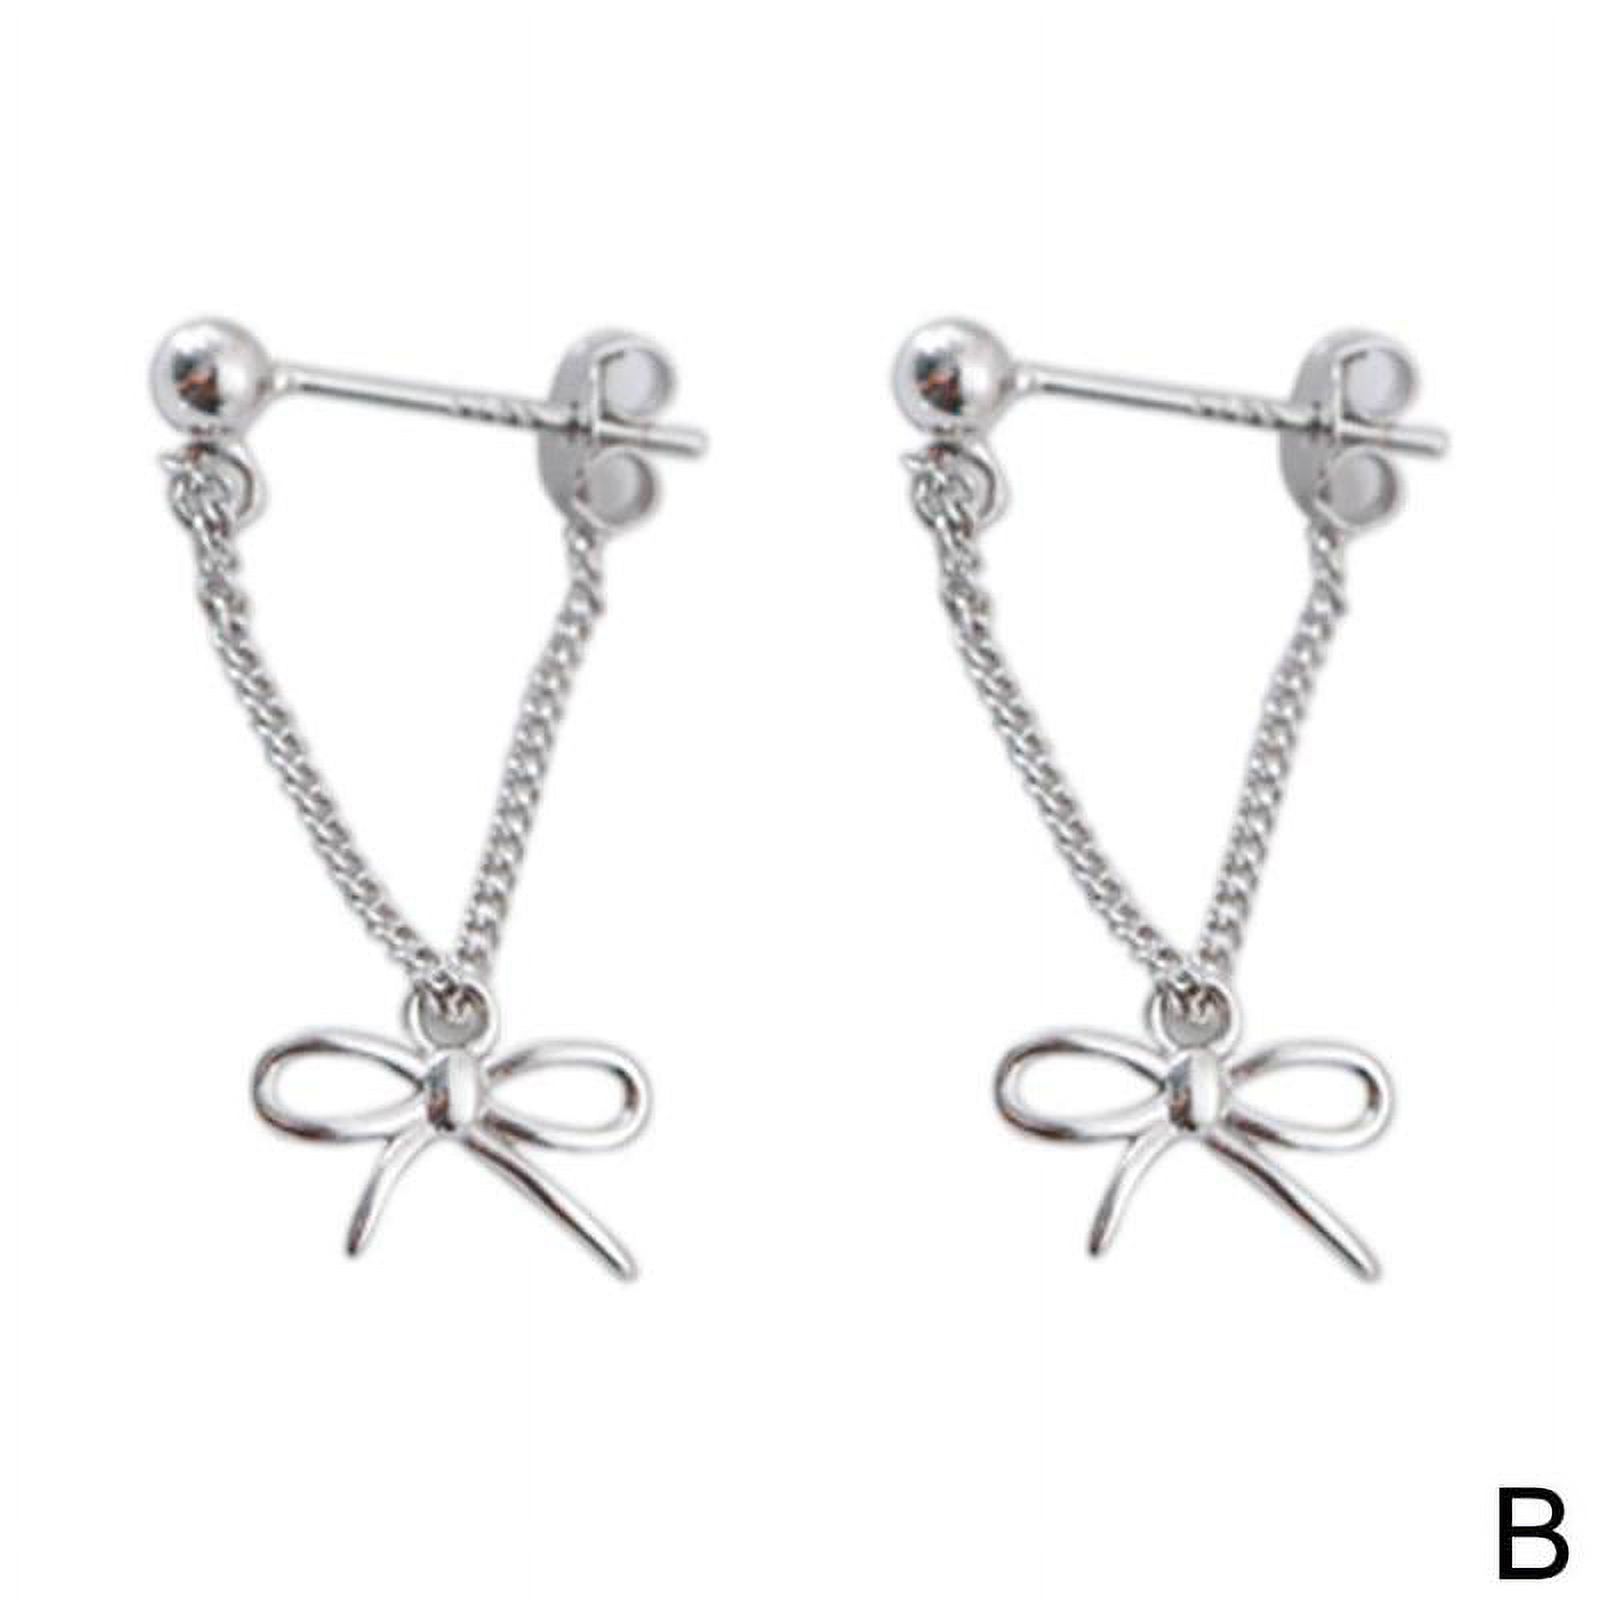 Silver Earrings Triangle Chain Drop Stud Earrings Women Butterfly Heart Star Crystal Dangle Earrings Studs Metal Chain Bead Earrings Jewelry Gifts X9A0 - image 1 of 9